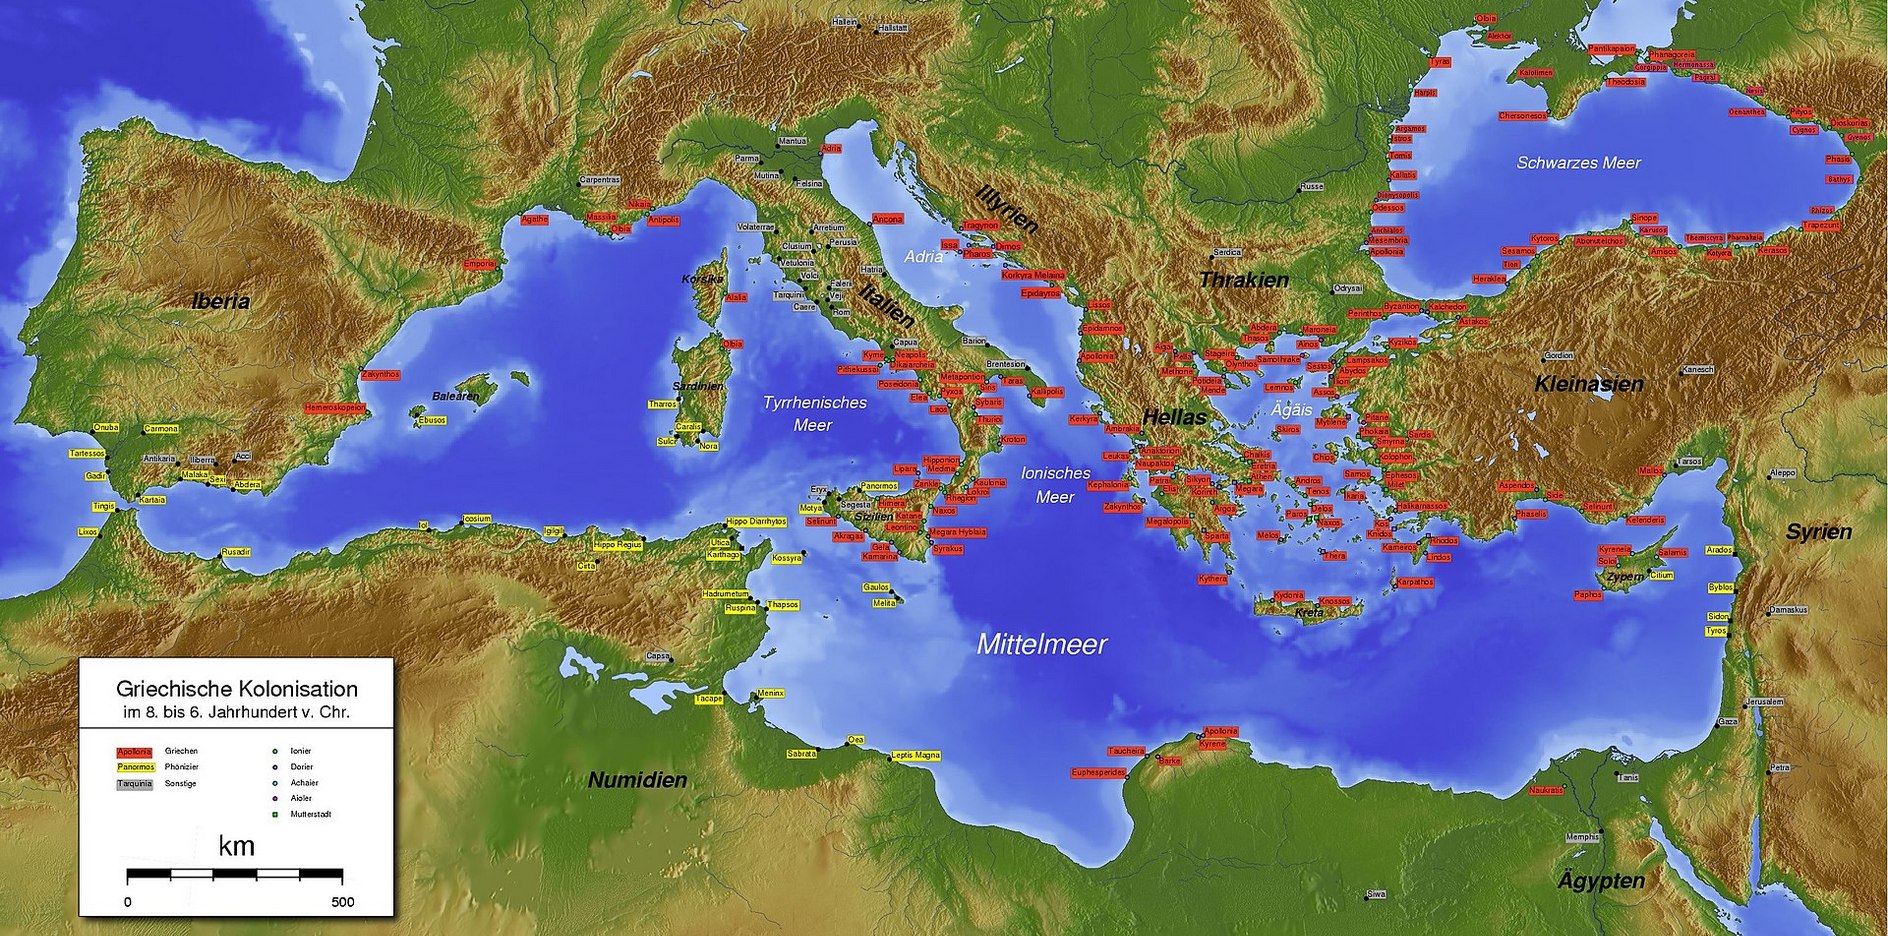 Griechischen und phönizischen Kolonien